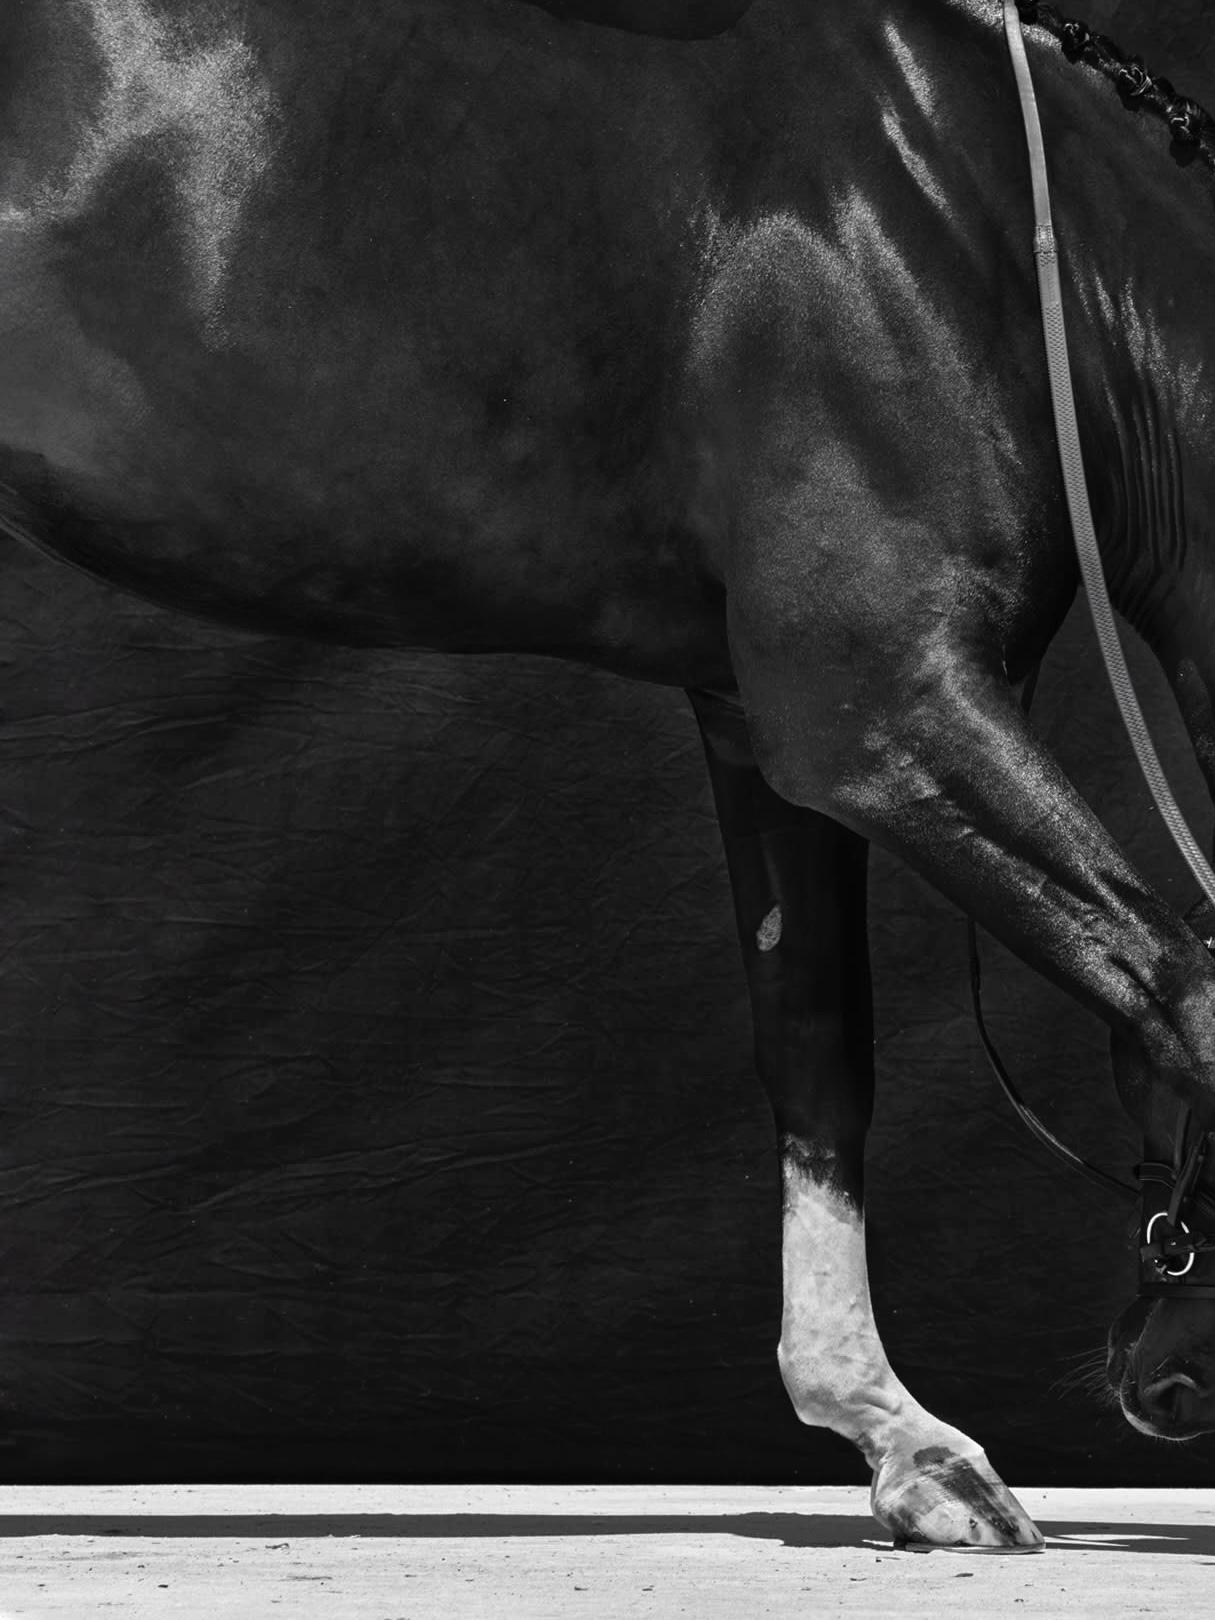 Brainpower Triptychon II, 2018 von Juan Lamarca
Hochwertiges archivfestes Baumwollpapier
Bildgröße: 17 x 13 Zoll
Ausgabe 4 von 7 plus 2 AP
Ungerahmt

Die Horse Series von Juan Lamarca ist eine abstrakte Sammlung von Fotografien, die